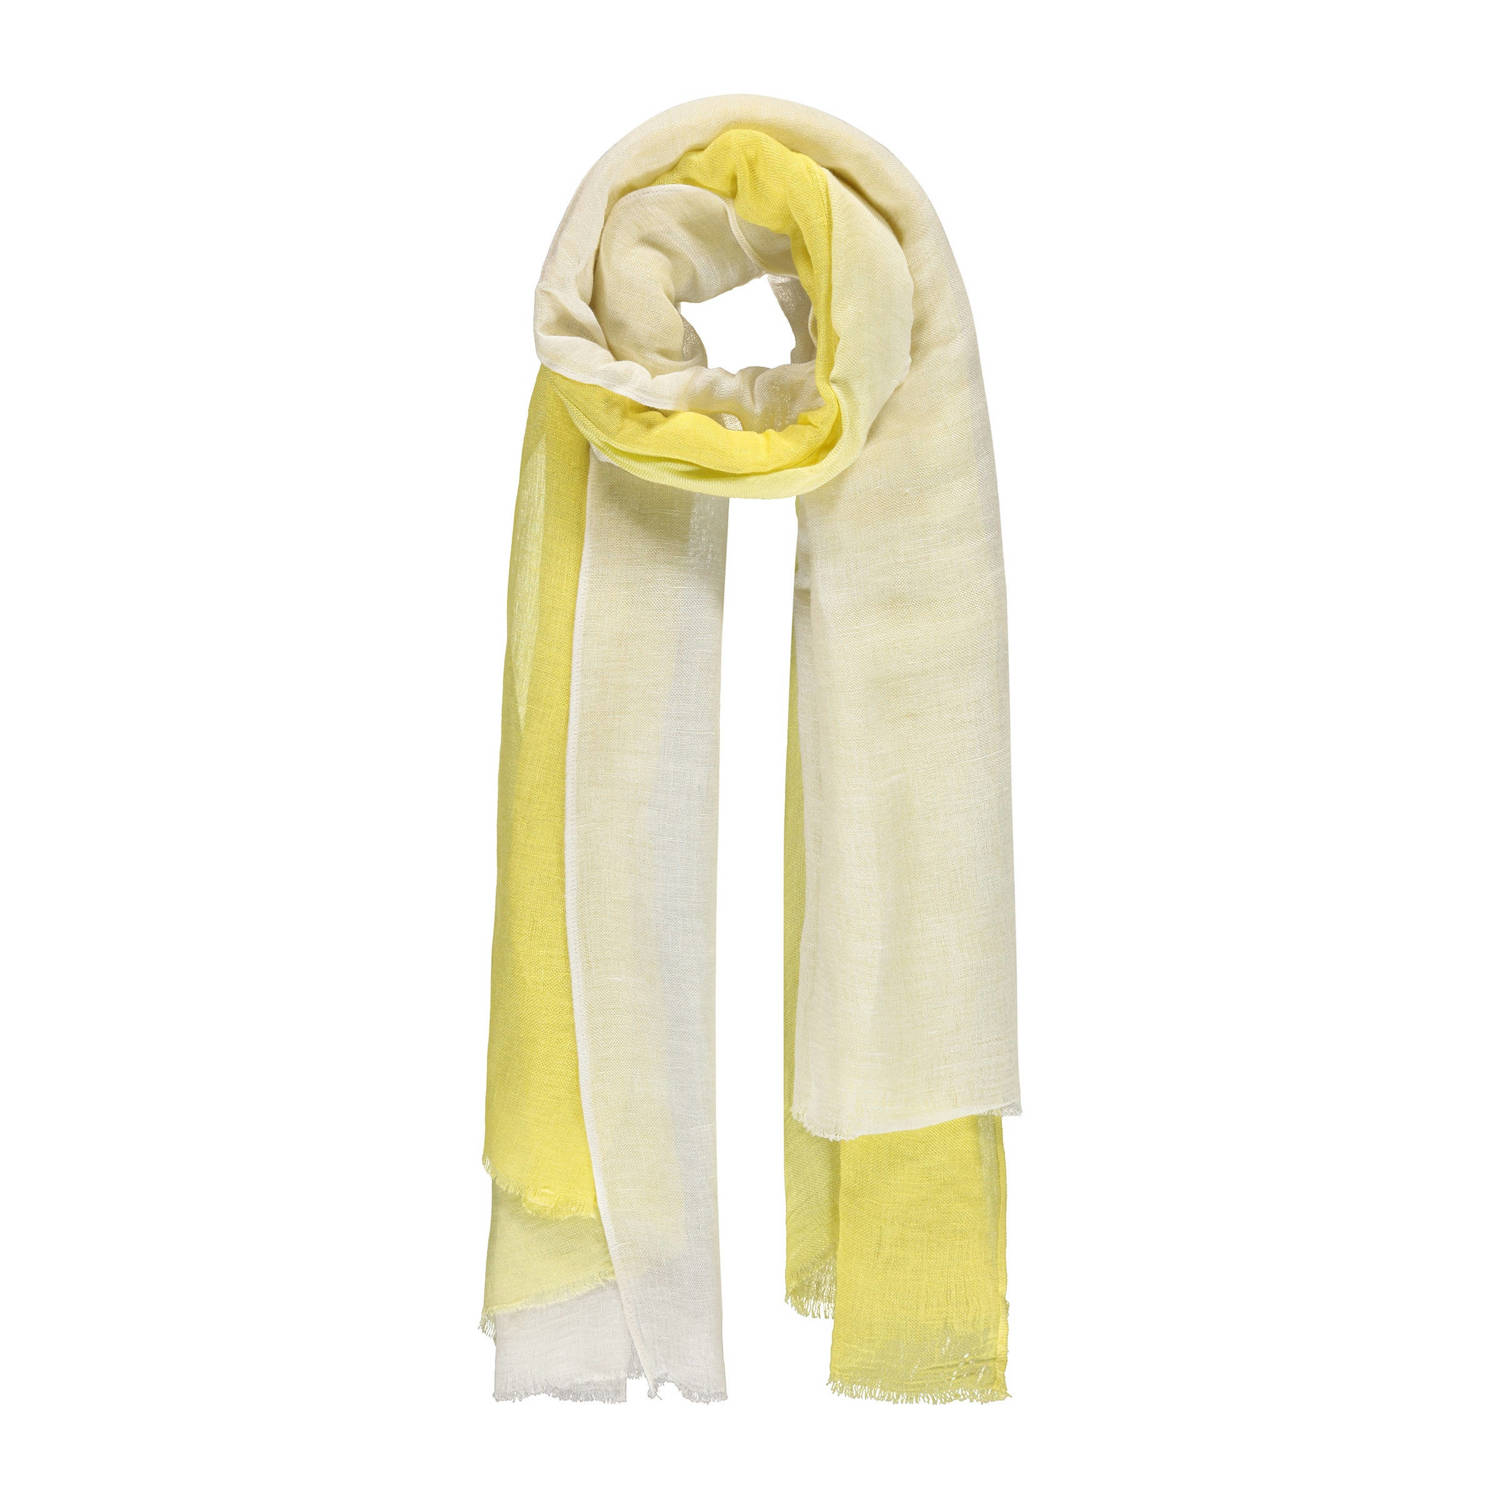 Expresso sjaal geel wit